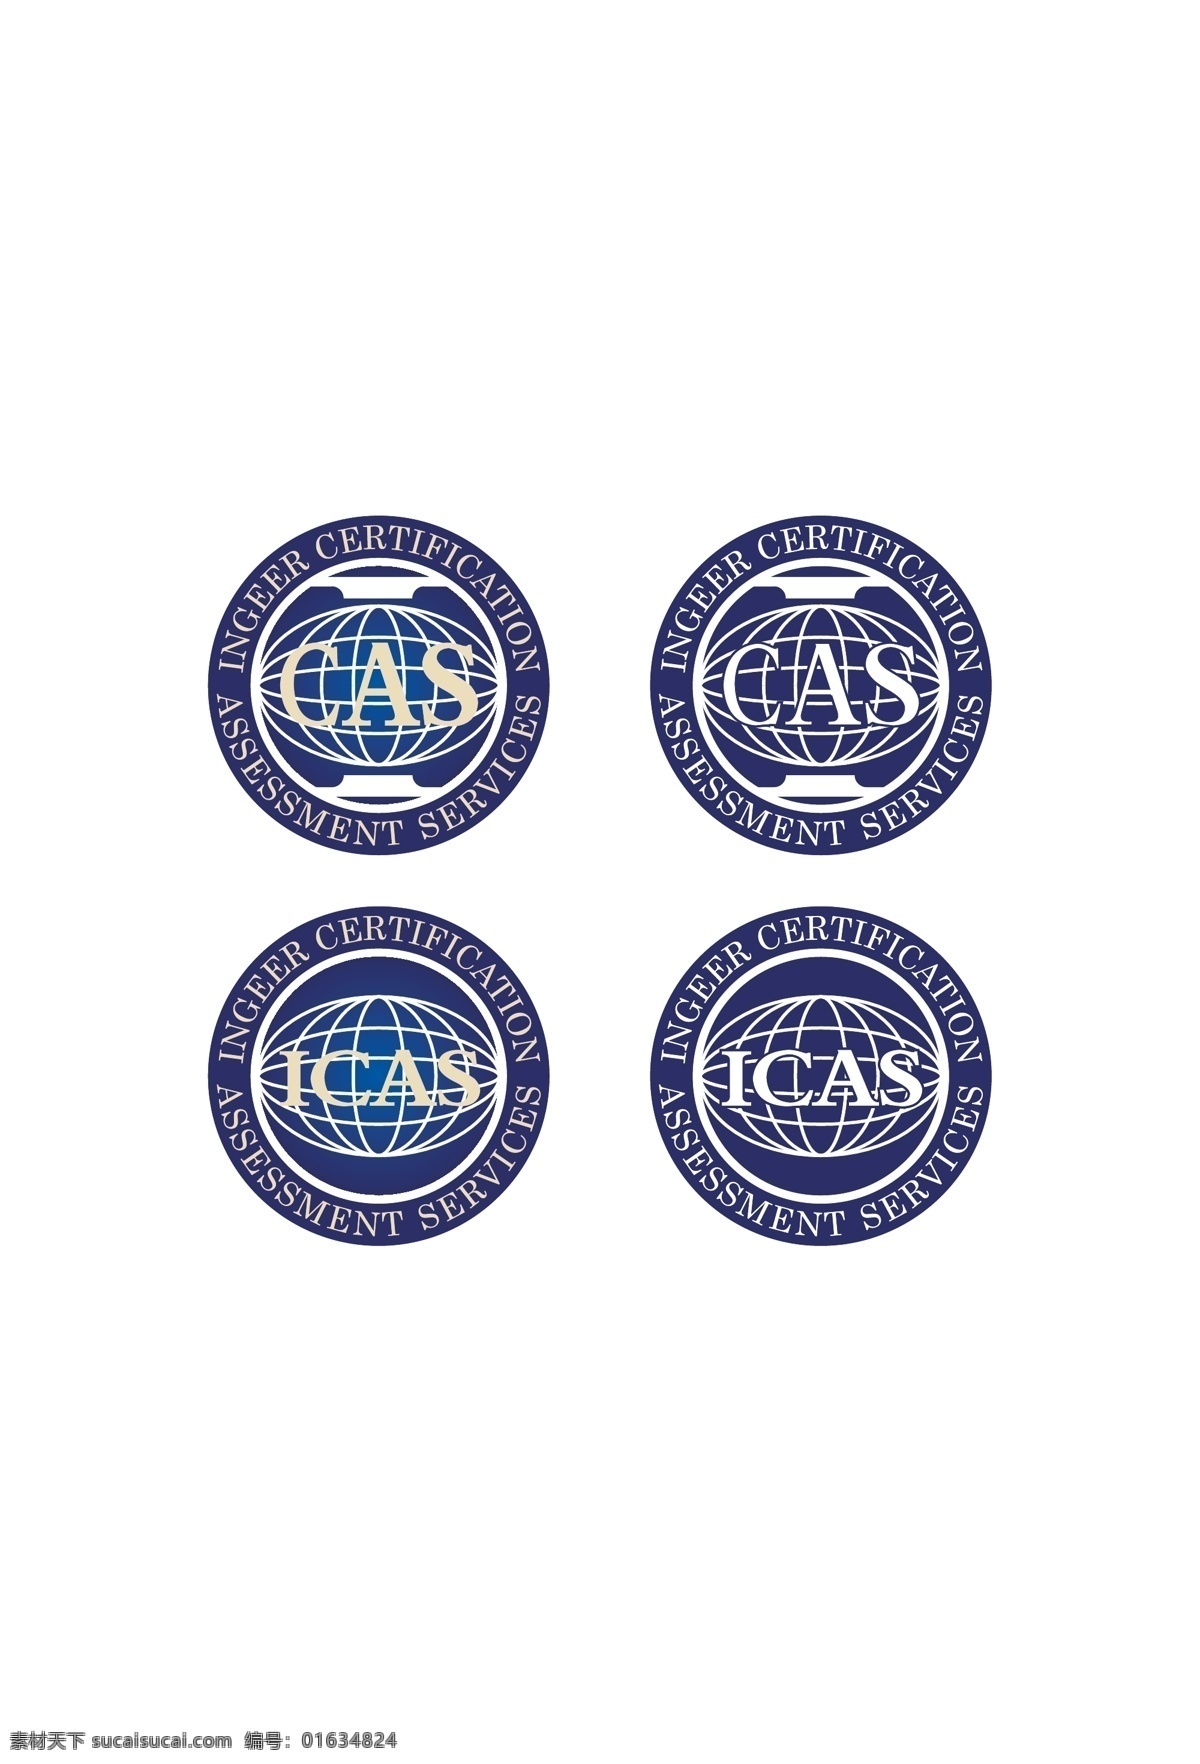 认证标志 icas cas 国际 认证